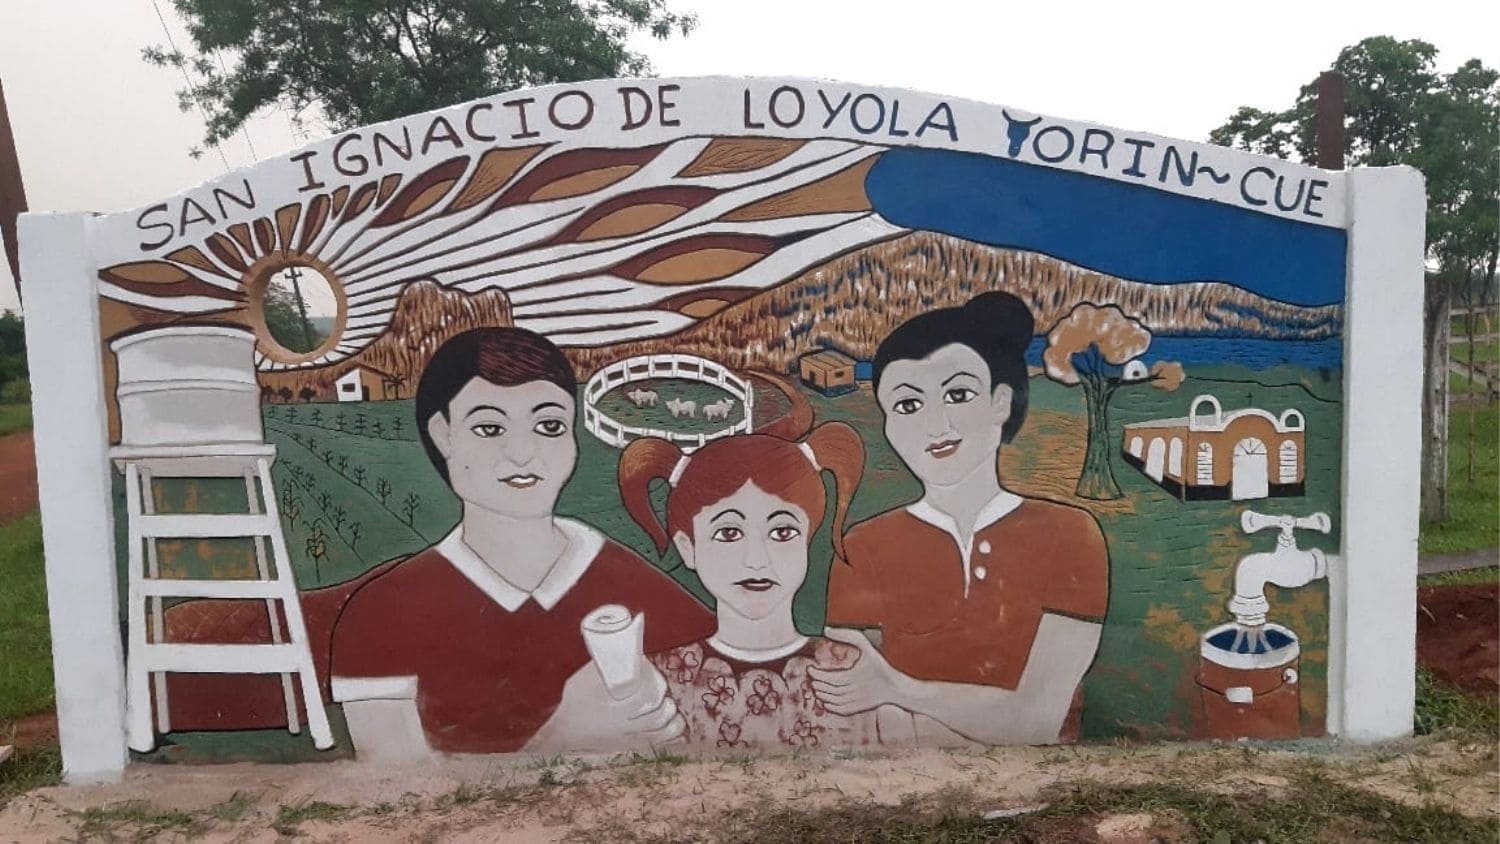 Mural de "San Ignacio Torin Cué"